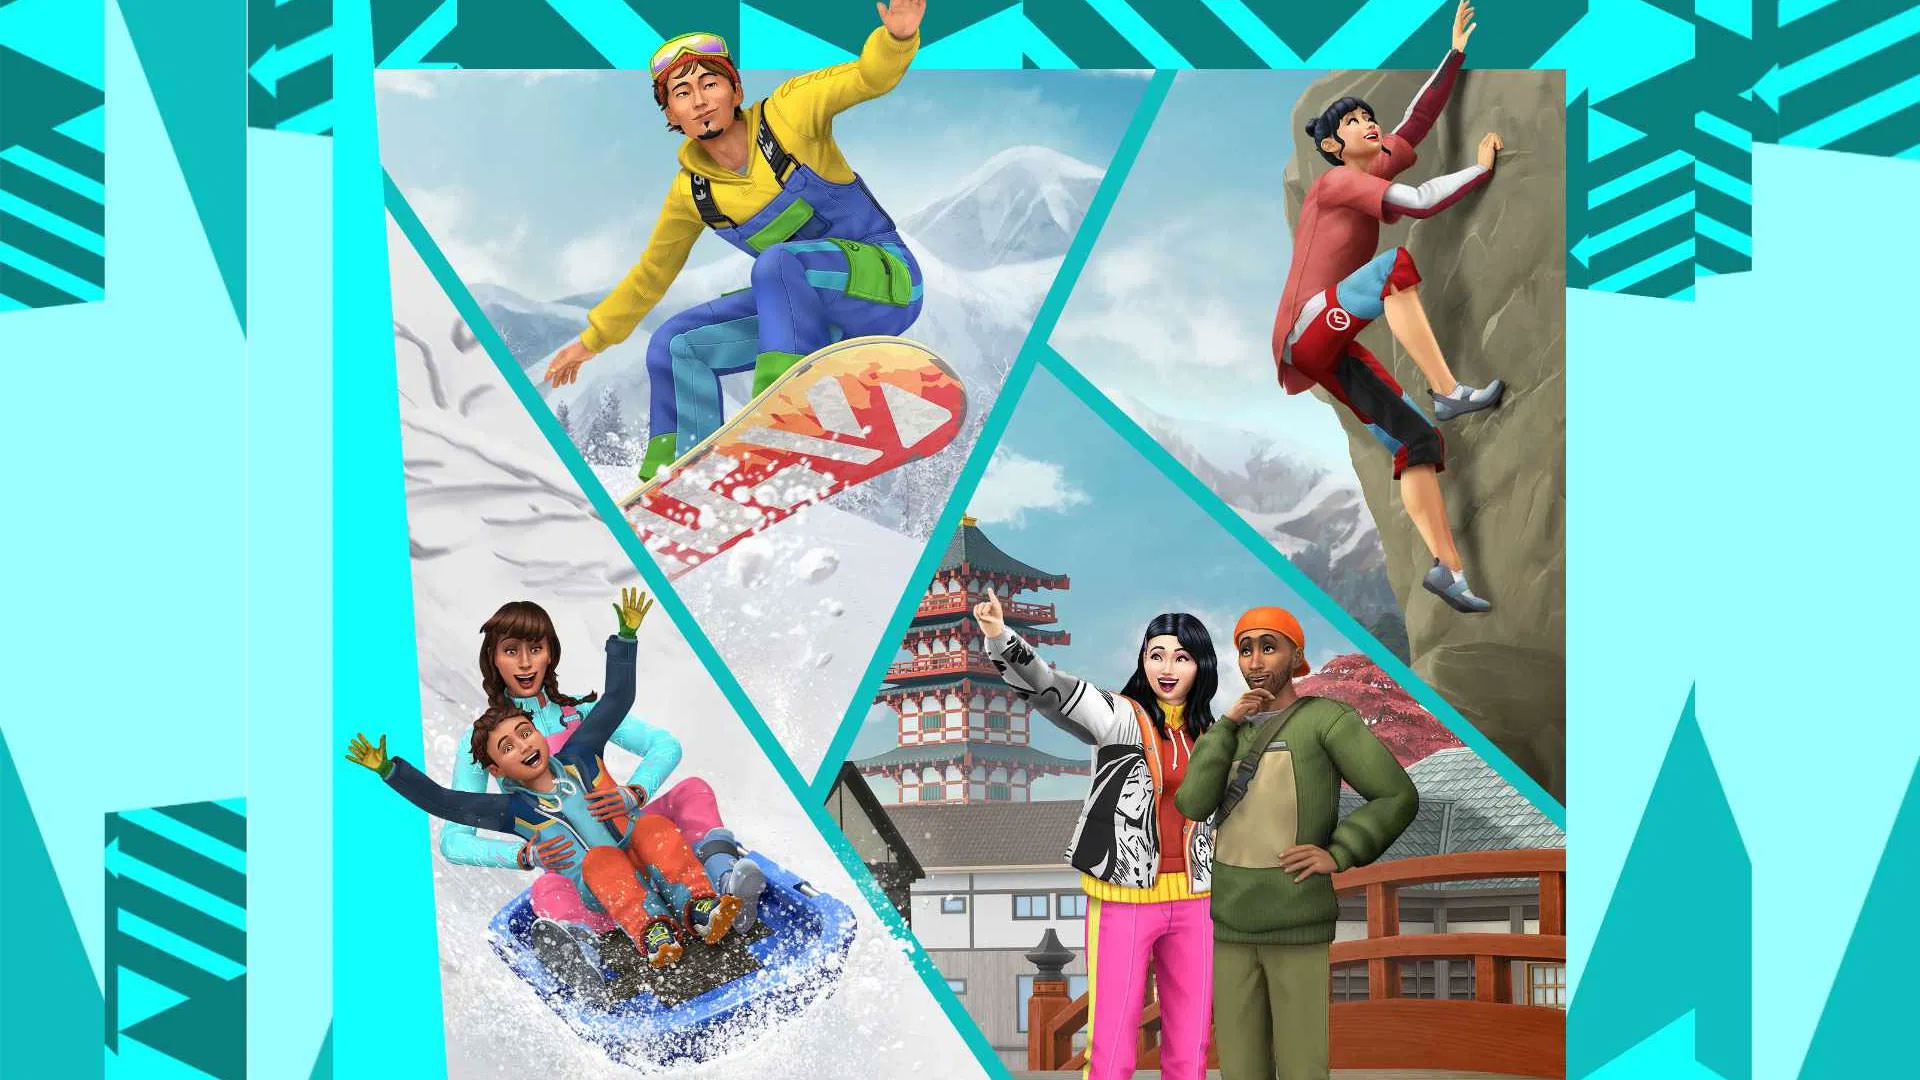 بسته الحاقی جدید بازی Sims 4 با نام Snowy Escape معرفی شد